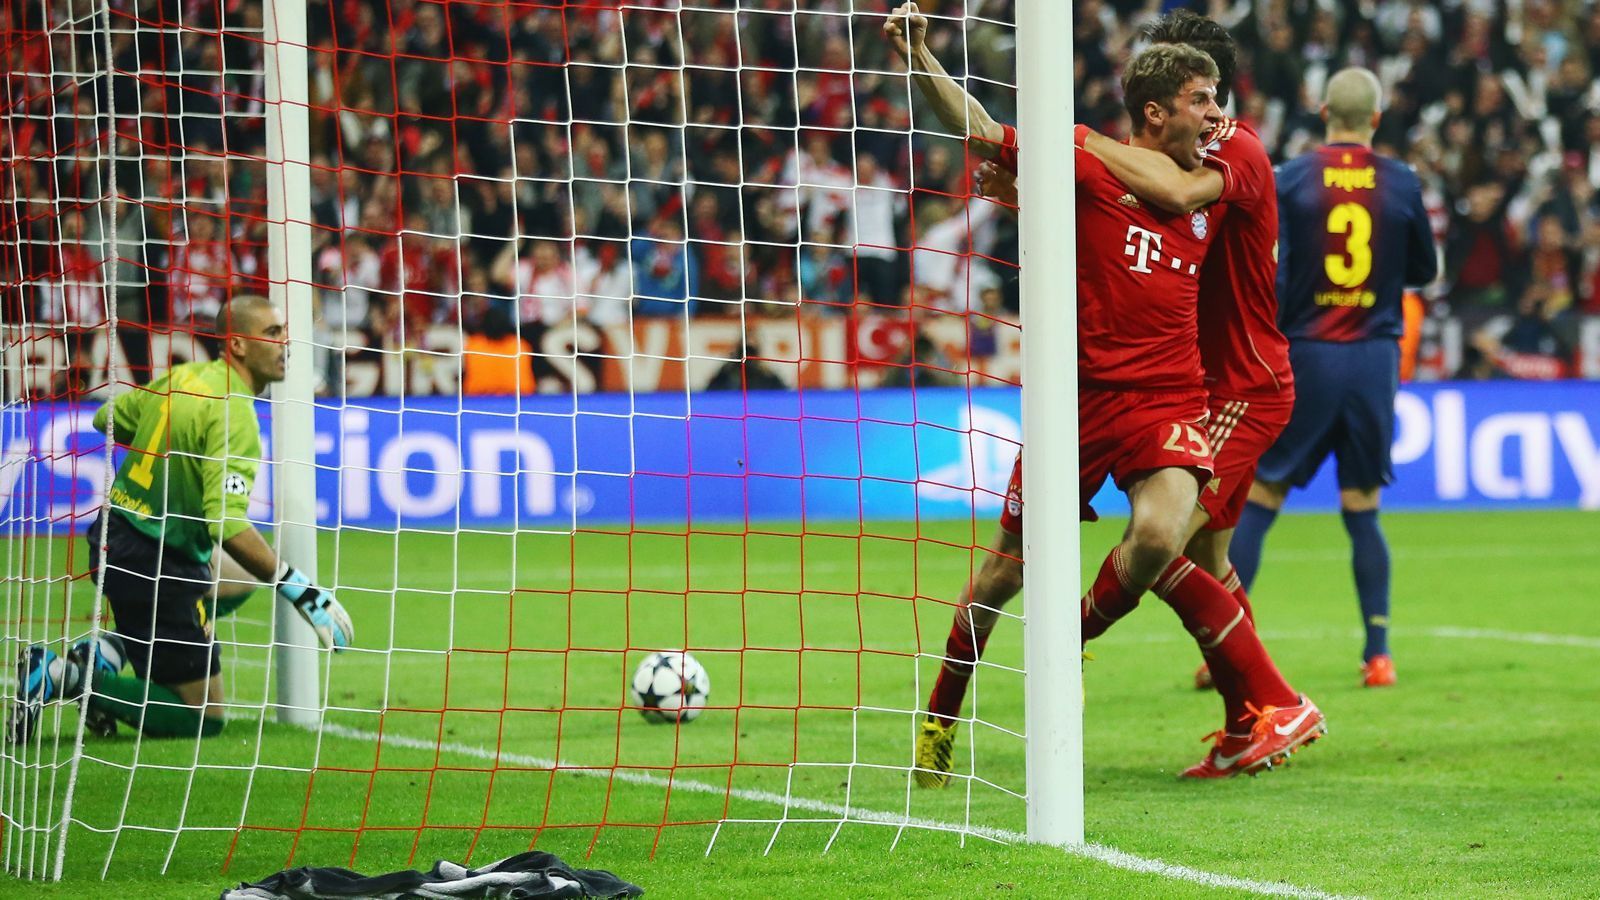 
                <strong>Thomas Müller</strong><br>
                Vom Nachwuchstalent Thomas Müller wurde im Laufe der Jahre das Gesicht des FC Bayern München - und der 31-Jährige wird das wohl auch noch länger bleiben. Erst kürzlich verlängerte die Identifikationsfigur seinen Vertrag vorzeitig bis 2023. Zwei seiner bislang 195 Pflichtspiel-Treffer erzielte Müller am 23. April 2013 gegen Barca. So gelang ihm das wichtige 1:0 in der 25. Minute. Nachdem die Bayern 2013 schlussendlich das Triple holten, konnte Müller seine Karriere ein Jahr später mit dem WM-Titel krönen. Zurück in die Gegenwart: Nachdem Müller unter Ex-Bayern-Trainer Niko Kovac nur noch ein Reservisten-Dasein fristete, gehört er nun unter Nachfolger Hansi Flick wieder zu den wichtigen Größen im Bayern-Team.
              